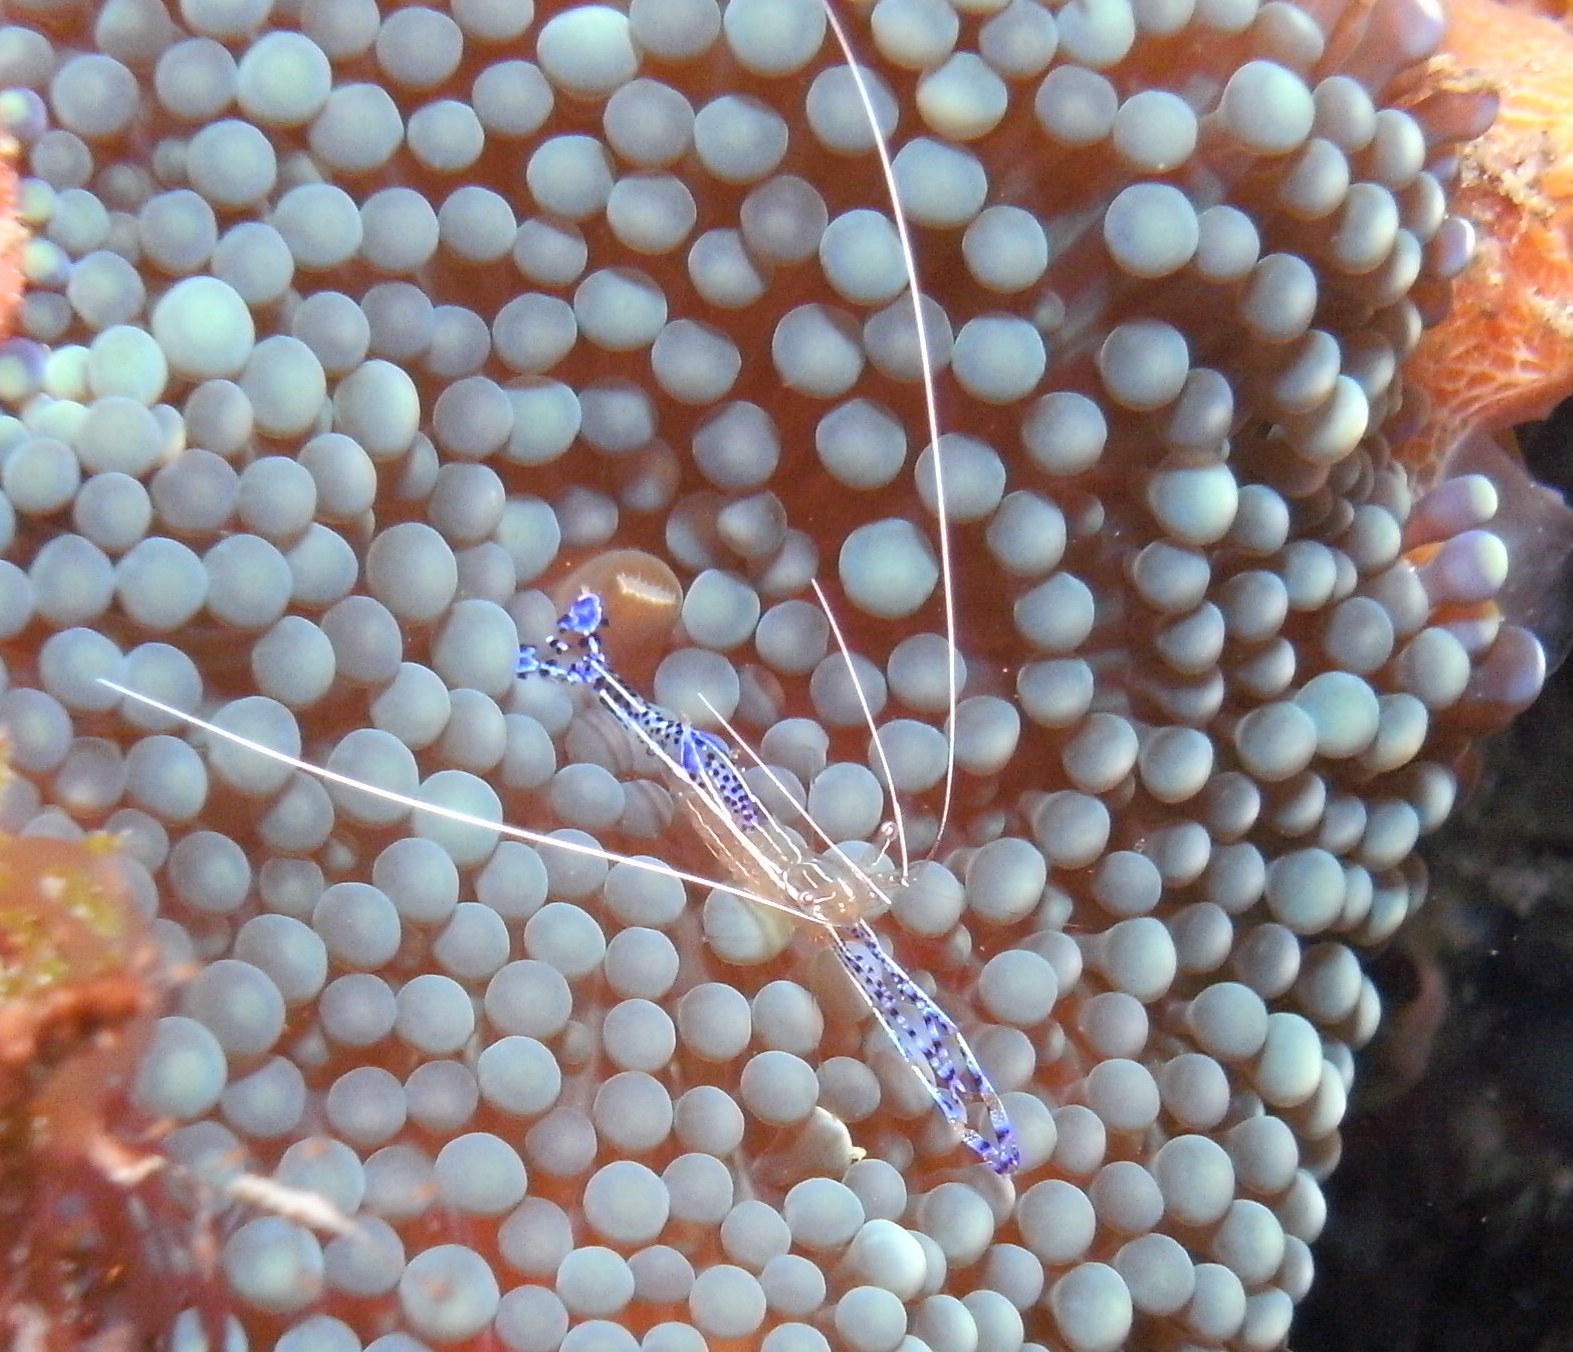 cleaner shrimp while diving in jupiter florida